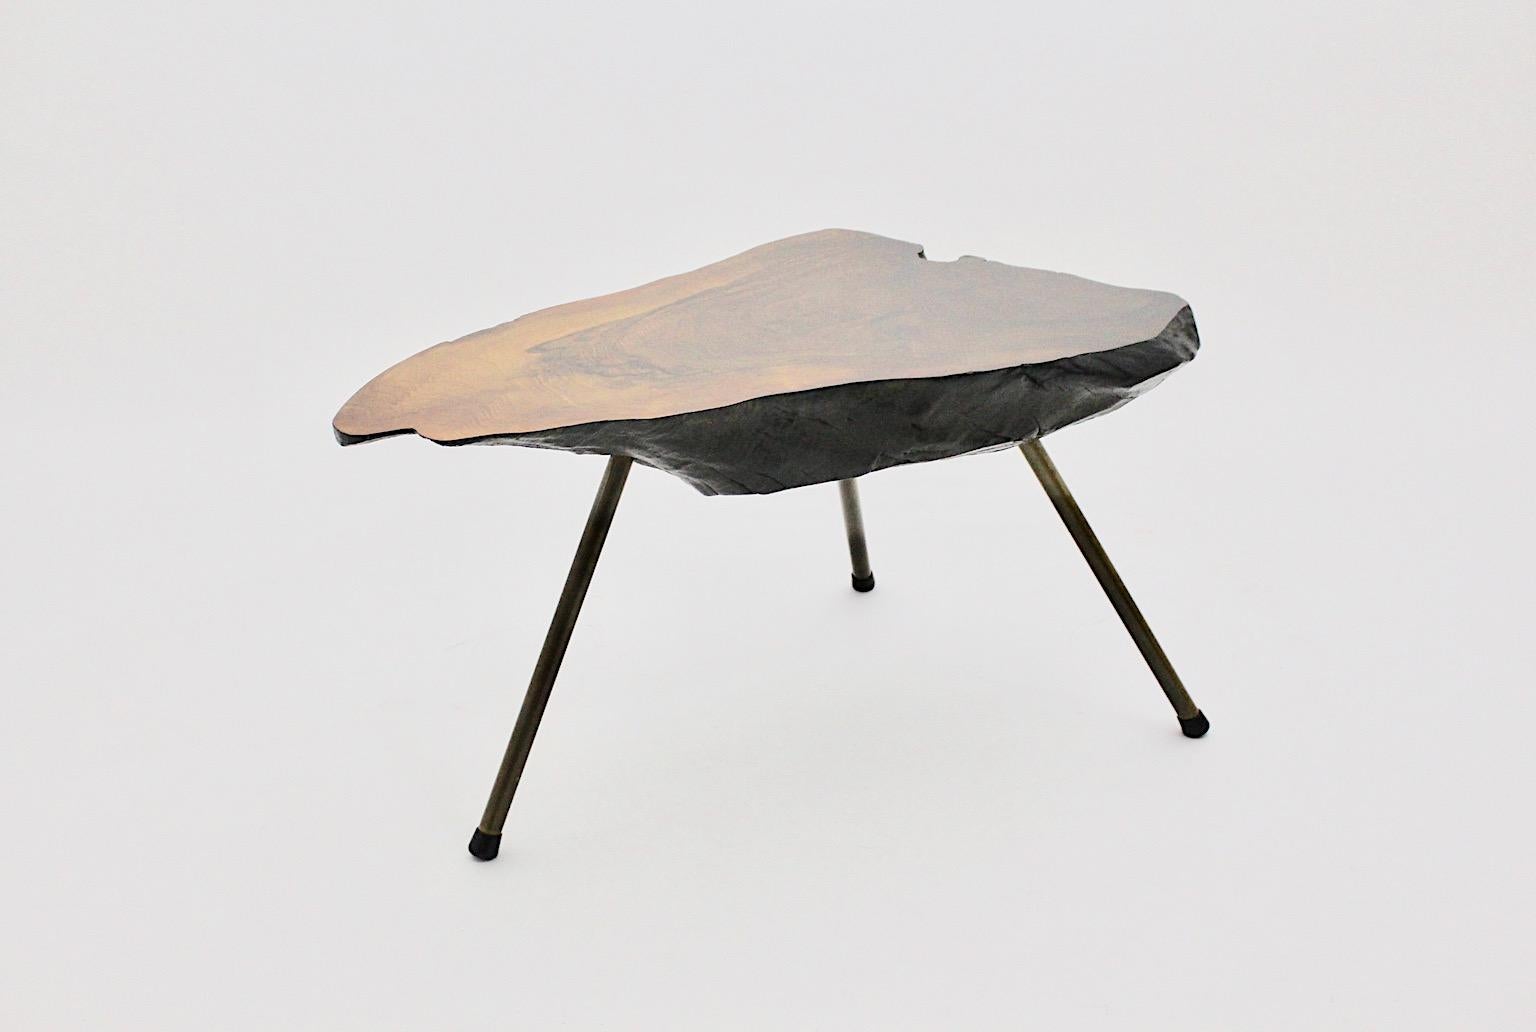 Mid-Century Modern Vintage Walnuss Baumstamm Tisch zugeschrieben 
Carl Auböck 1950er Jahre Wien.
Ein wunderbarer Sofatisch mit einer Platte aus massivem Walnussbaumstamm, der einen harmonischen, organisch-modernen Stil verbreitet, der die